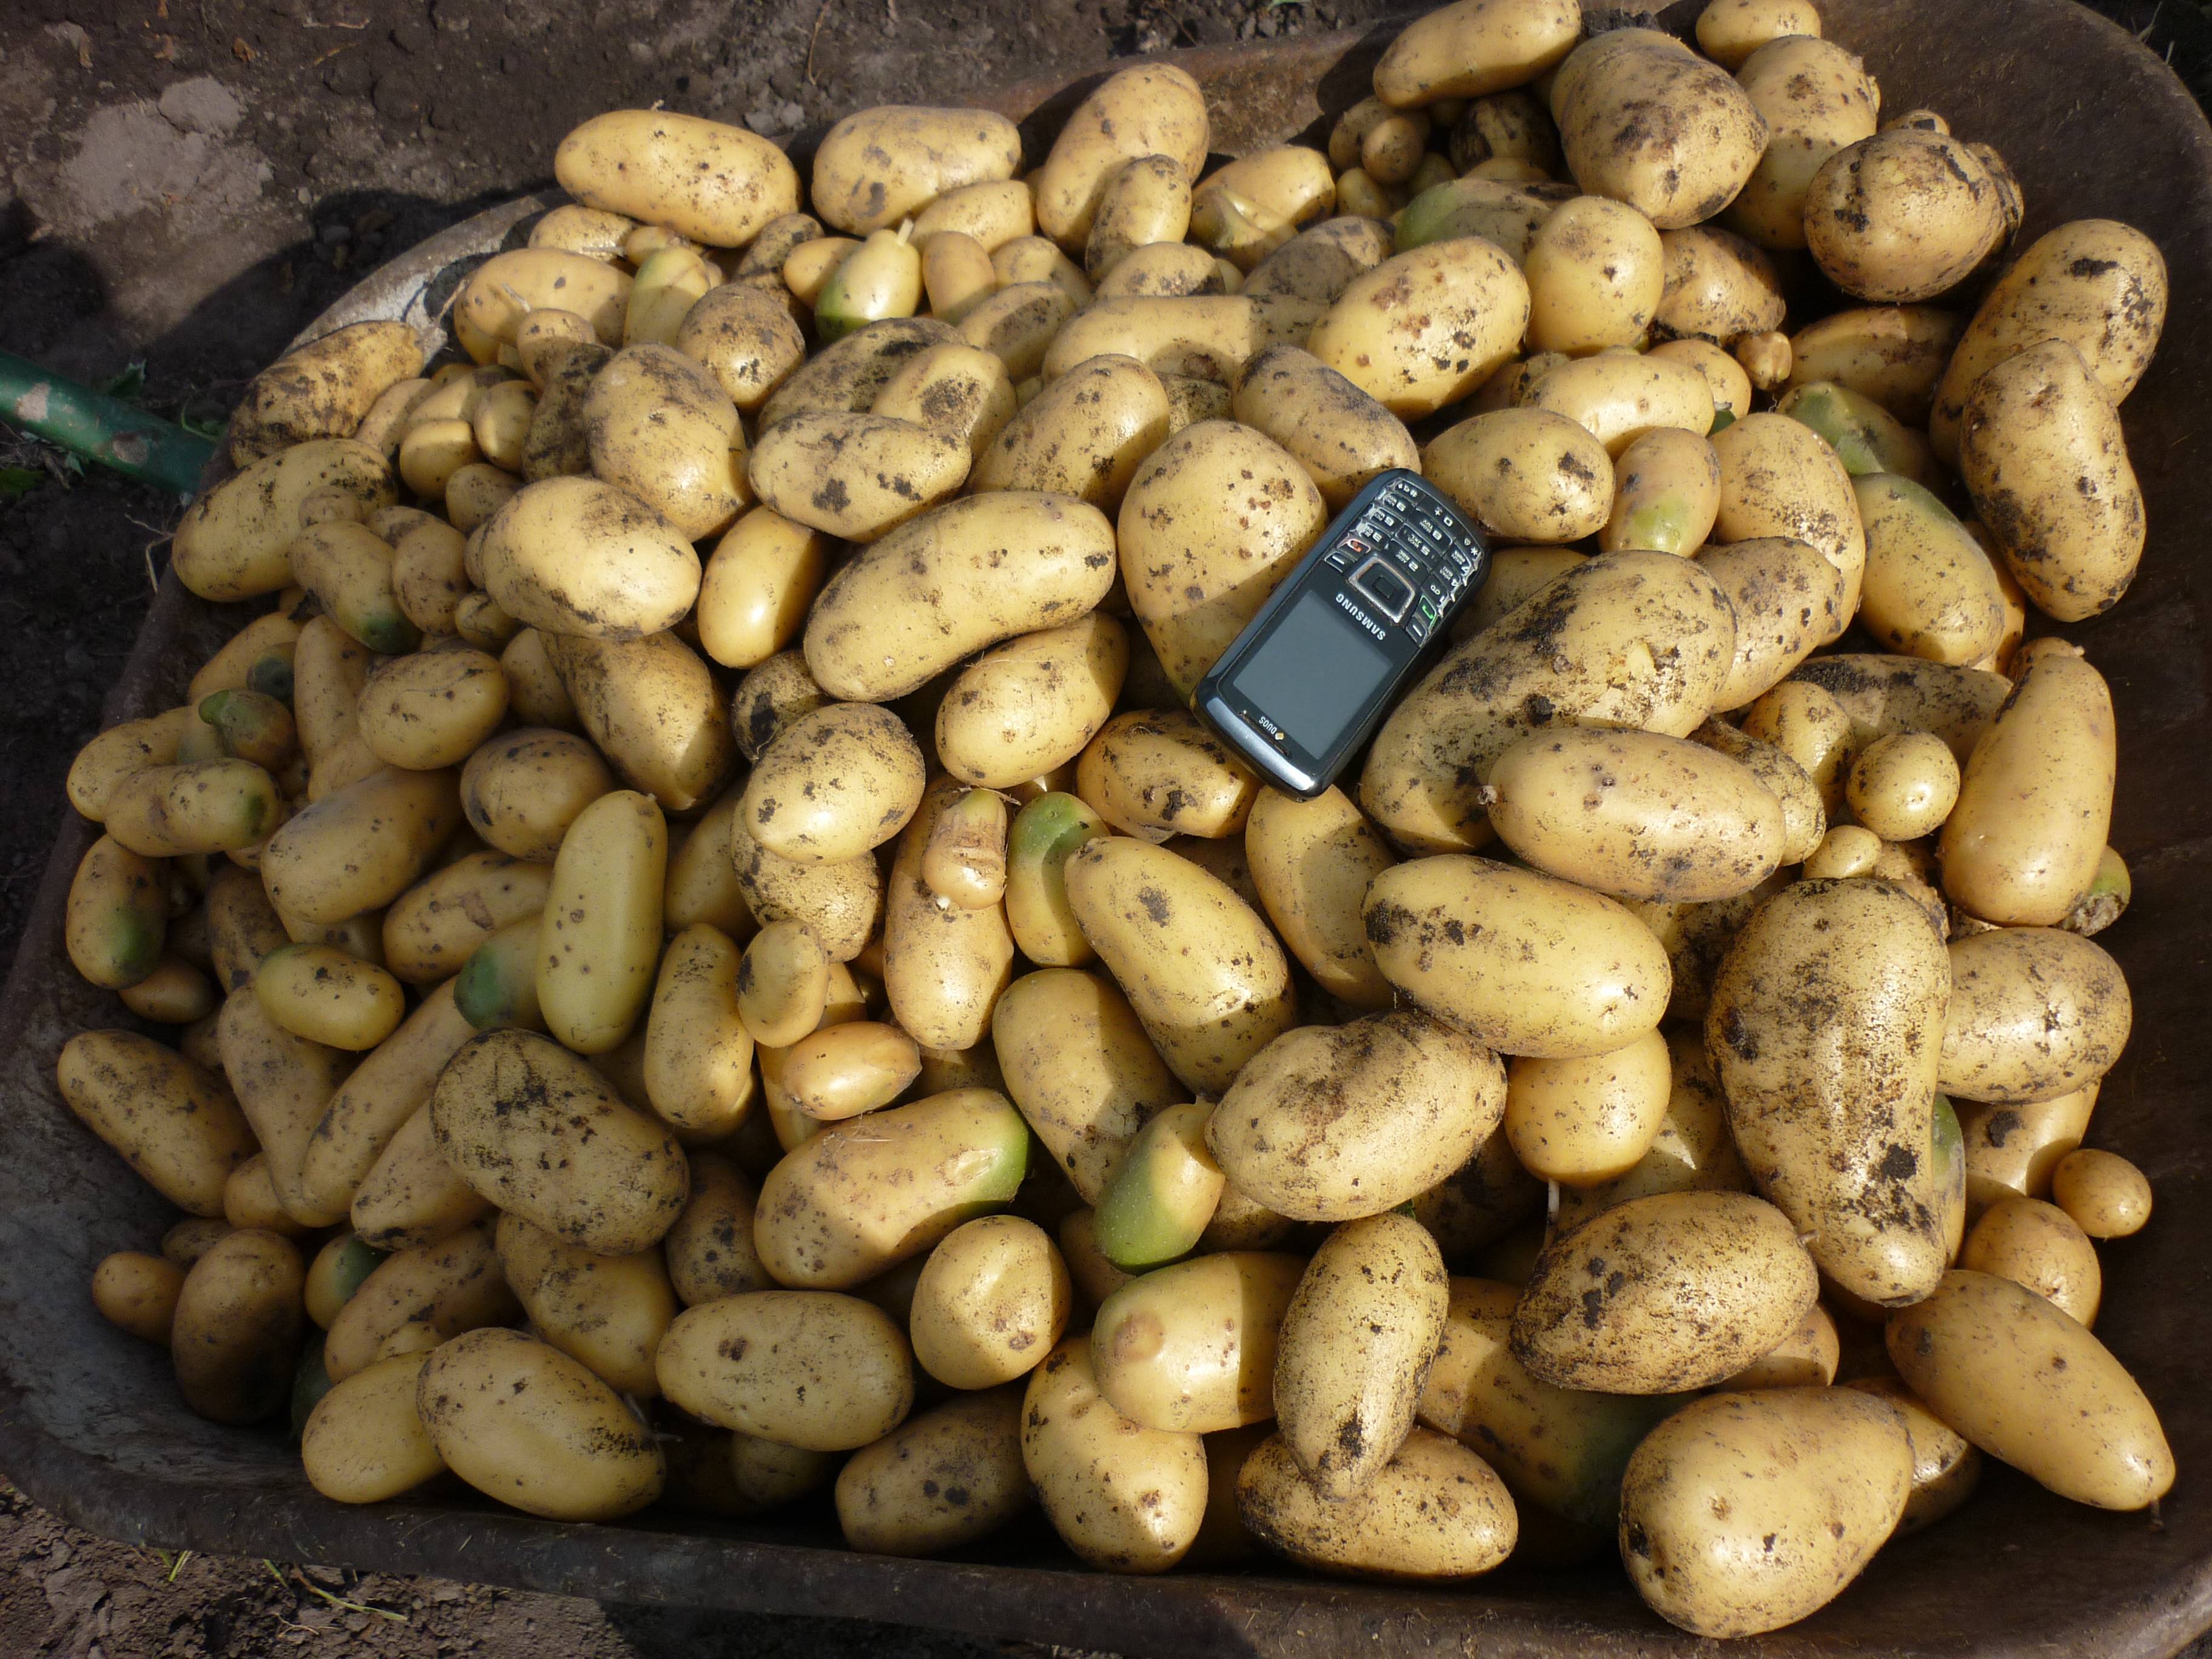 Сорт картофеля королева анна: характеристика и описание картошки, пошаговая инструкция по выращиванию и схема посадки, а также фото клубней